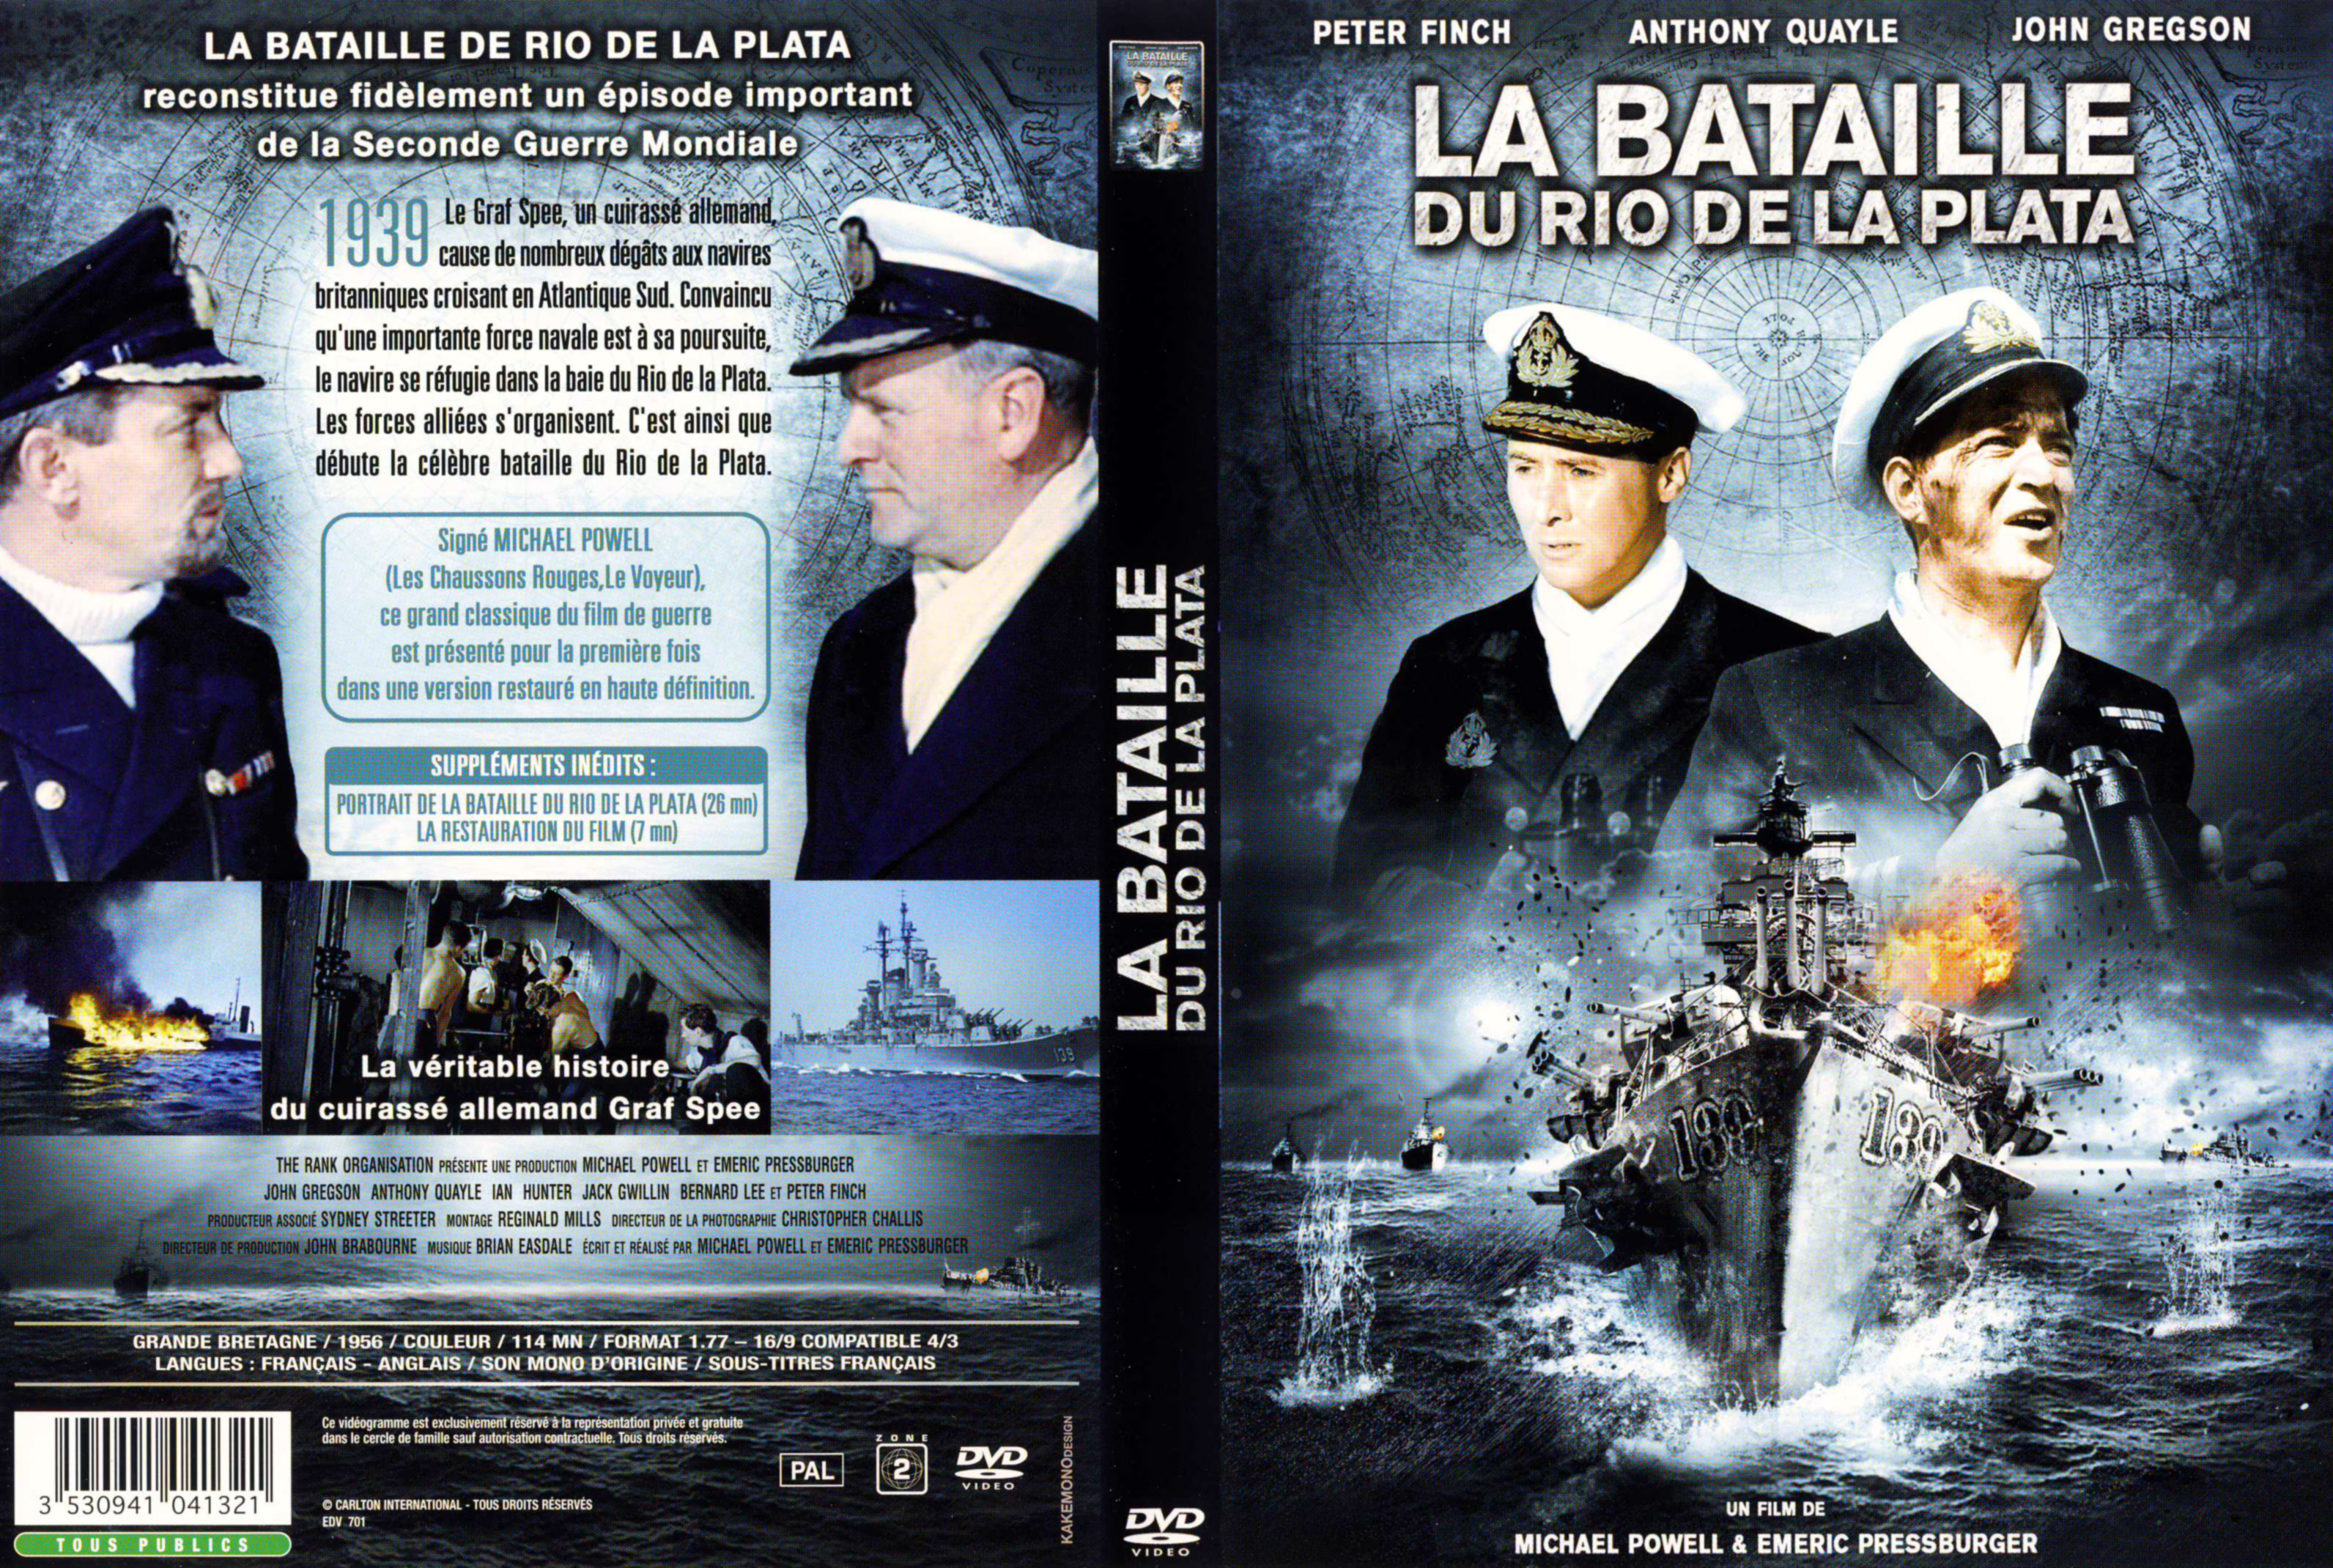 Jaquette DVD La bataille du rio de la plata v2